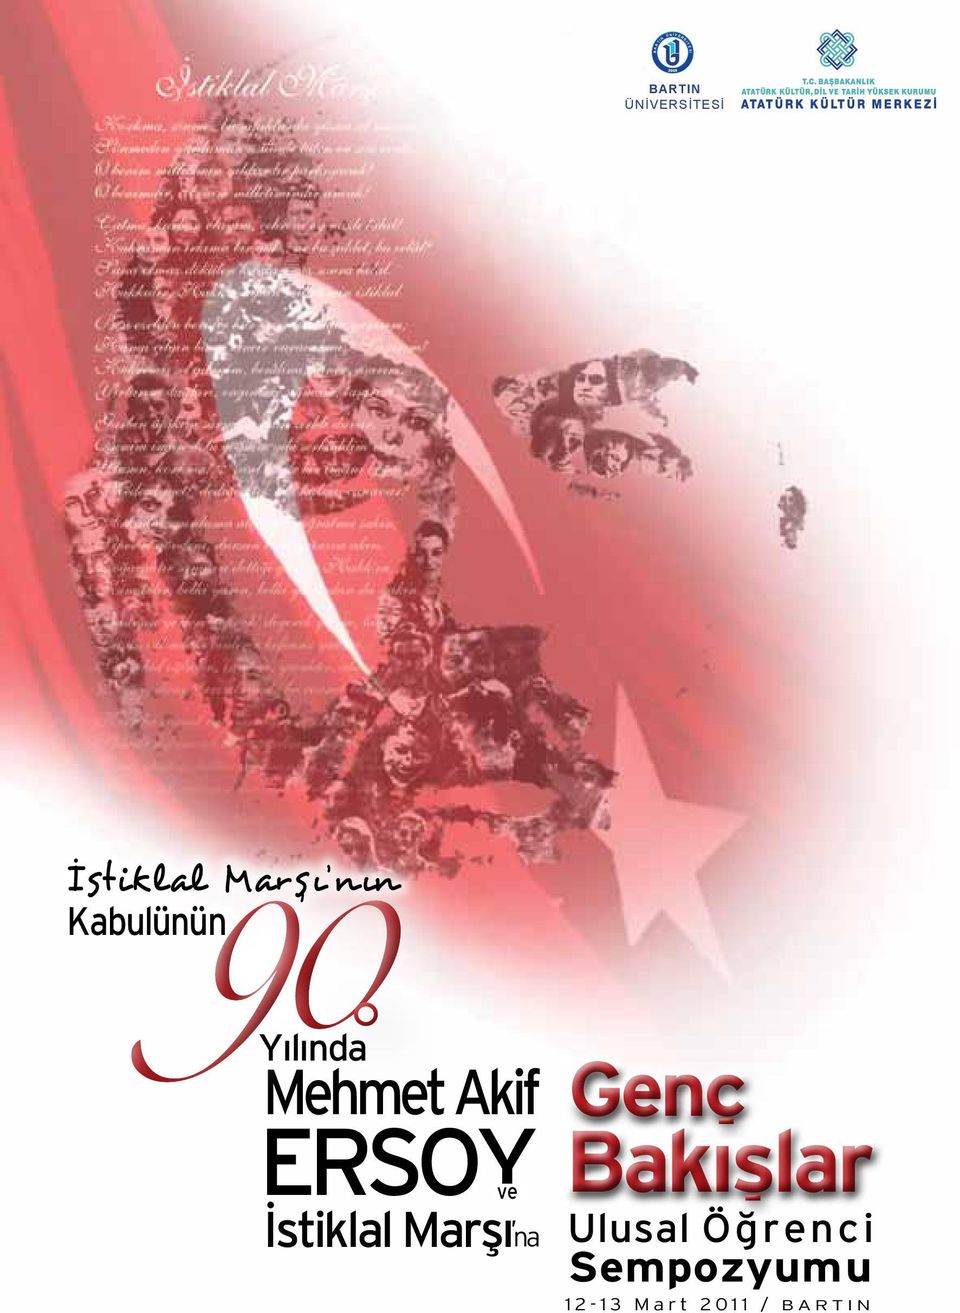 Mehmet Akif ERSOY ve İstiklal Marşı na Genc Bakıslar